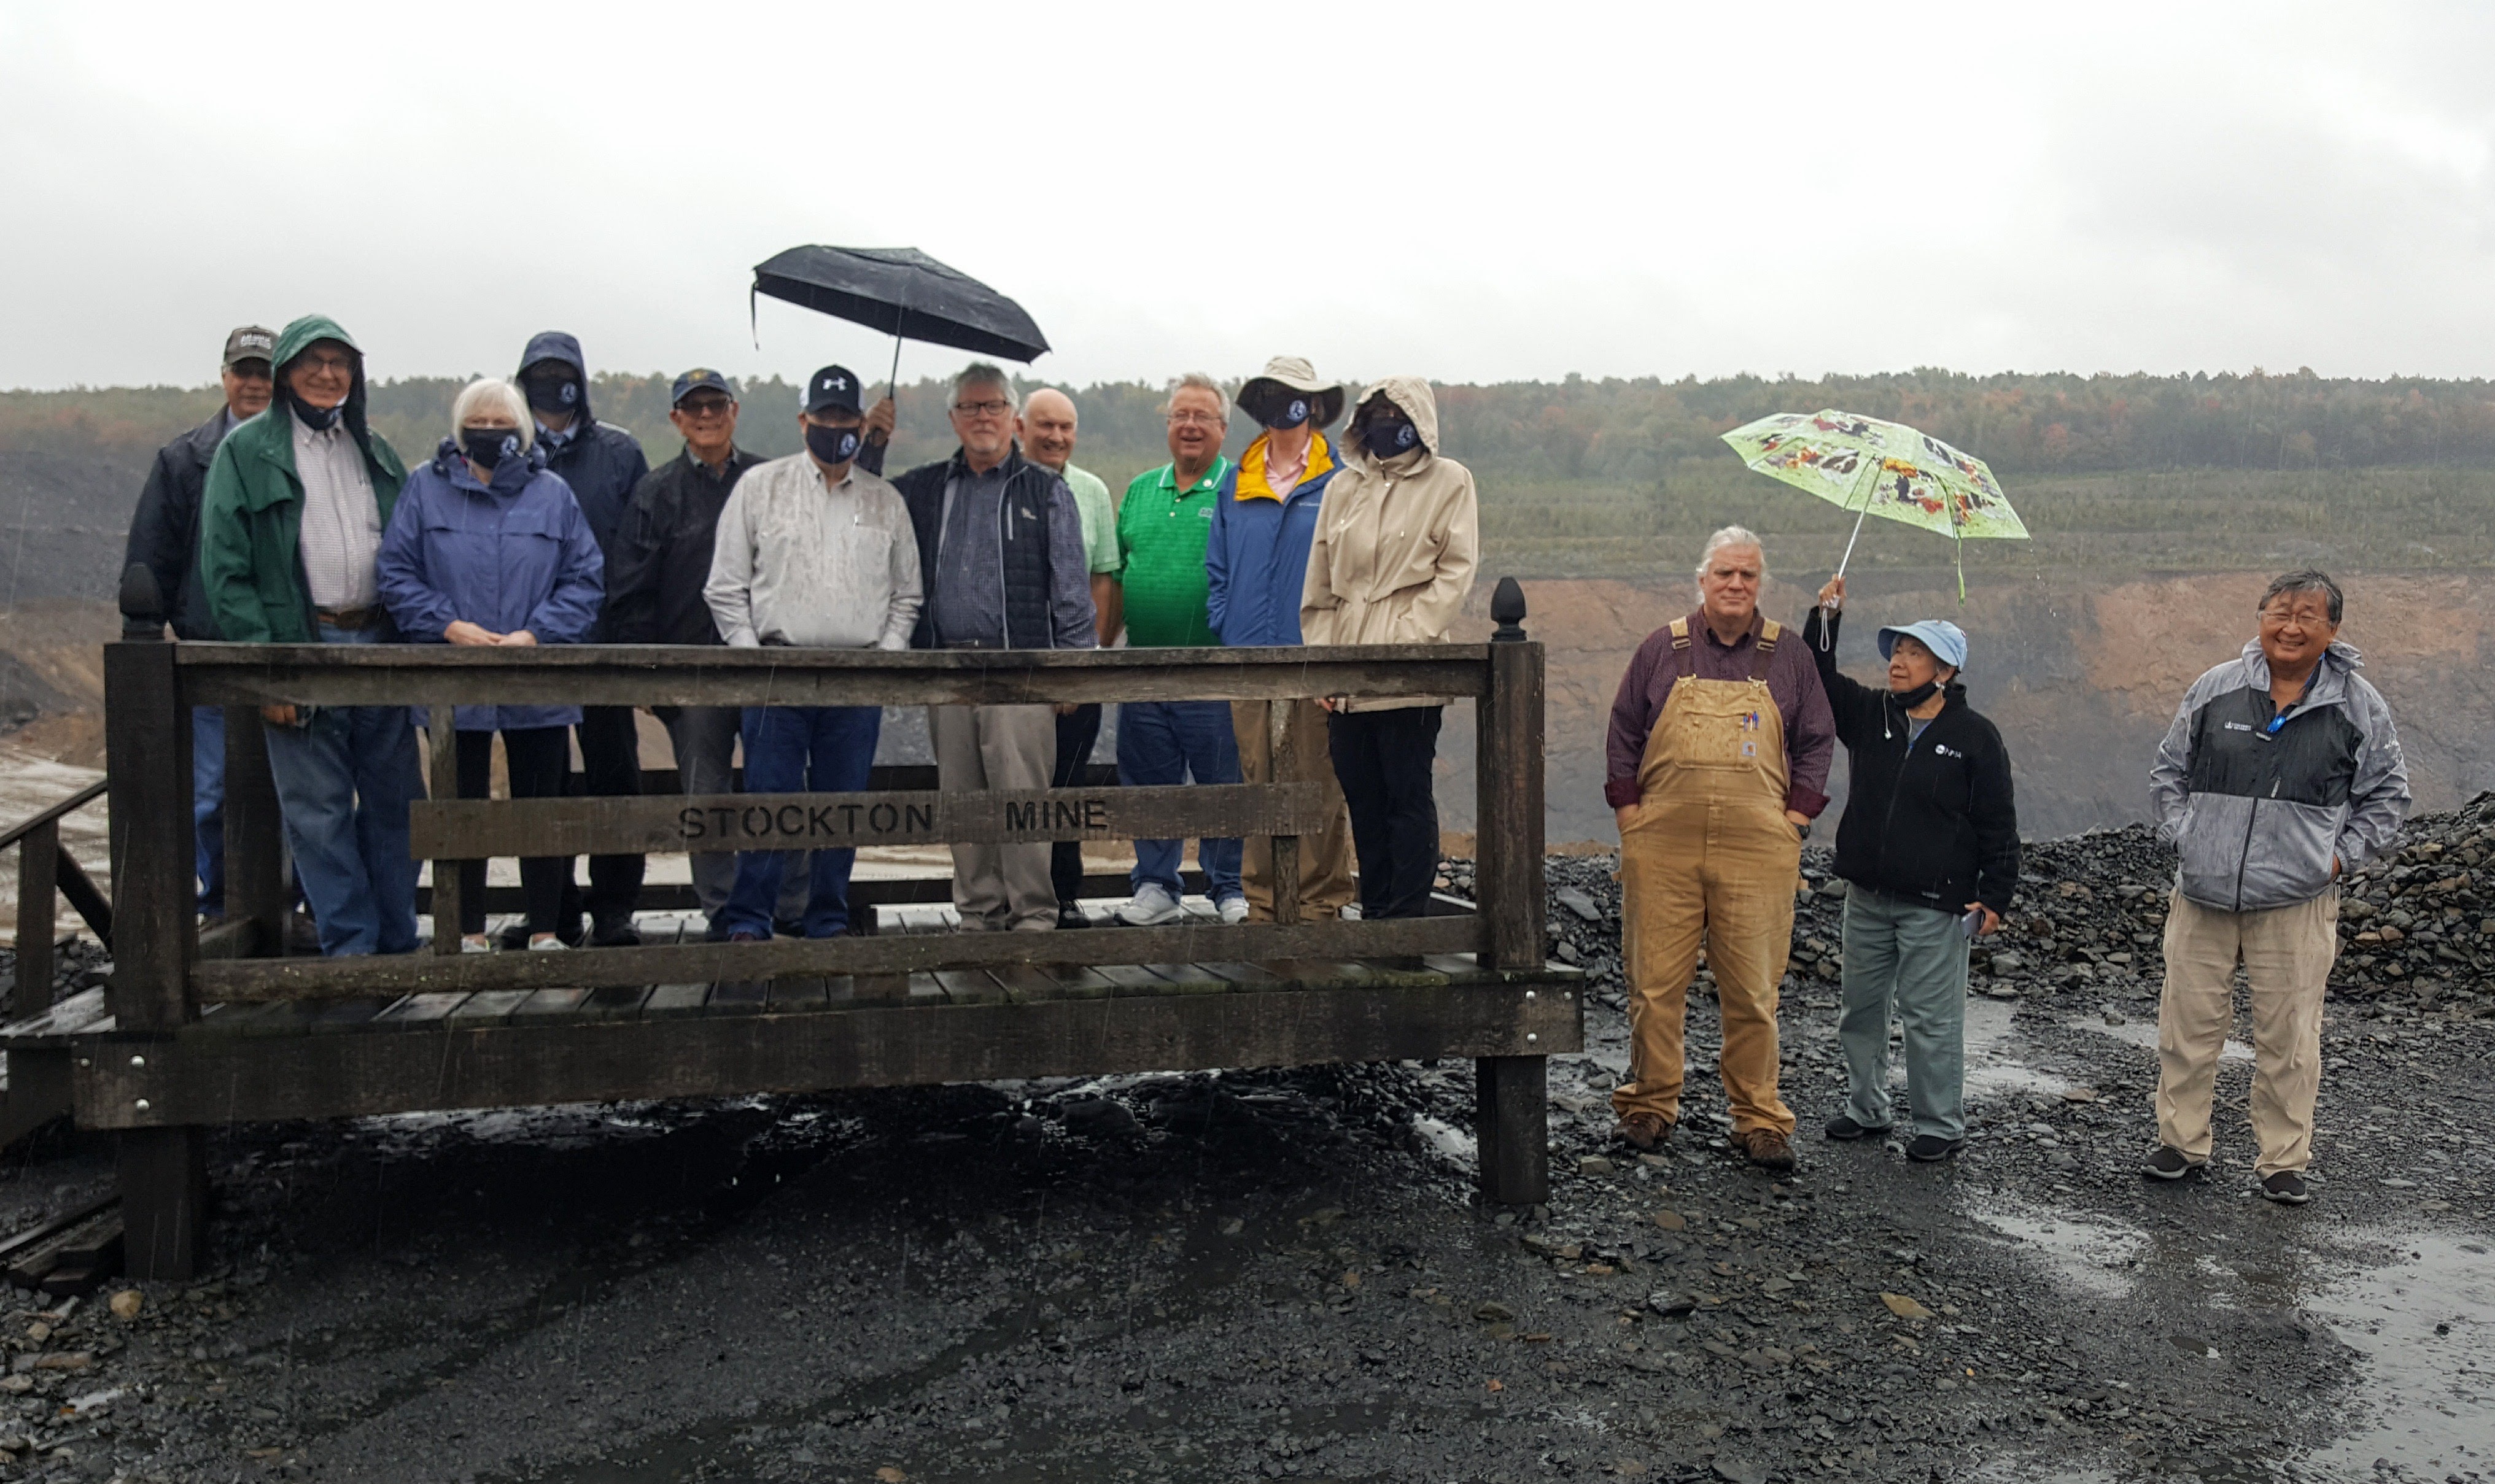 Atlantic Carbon Mine Tour Group Shot